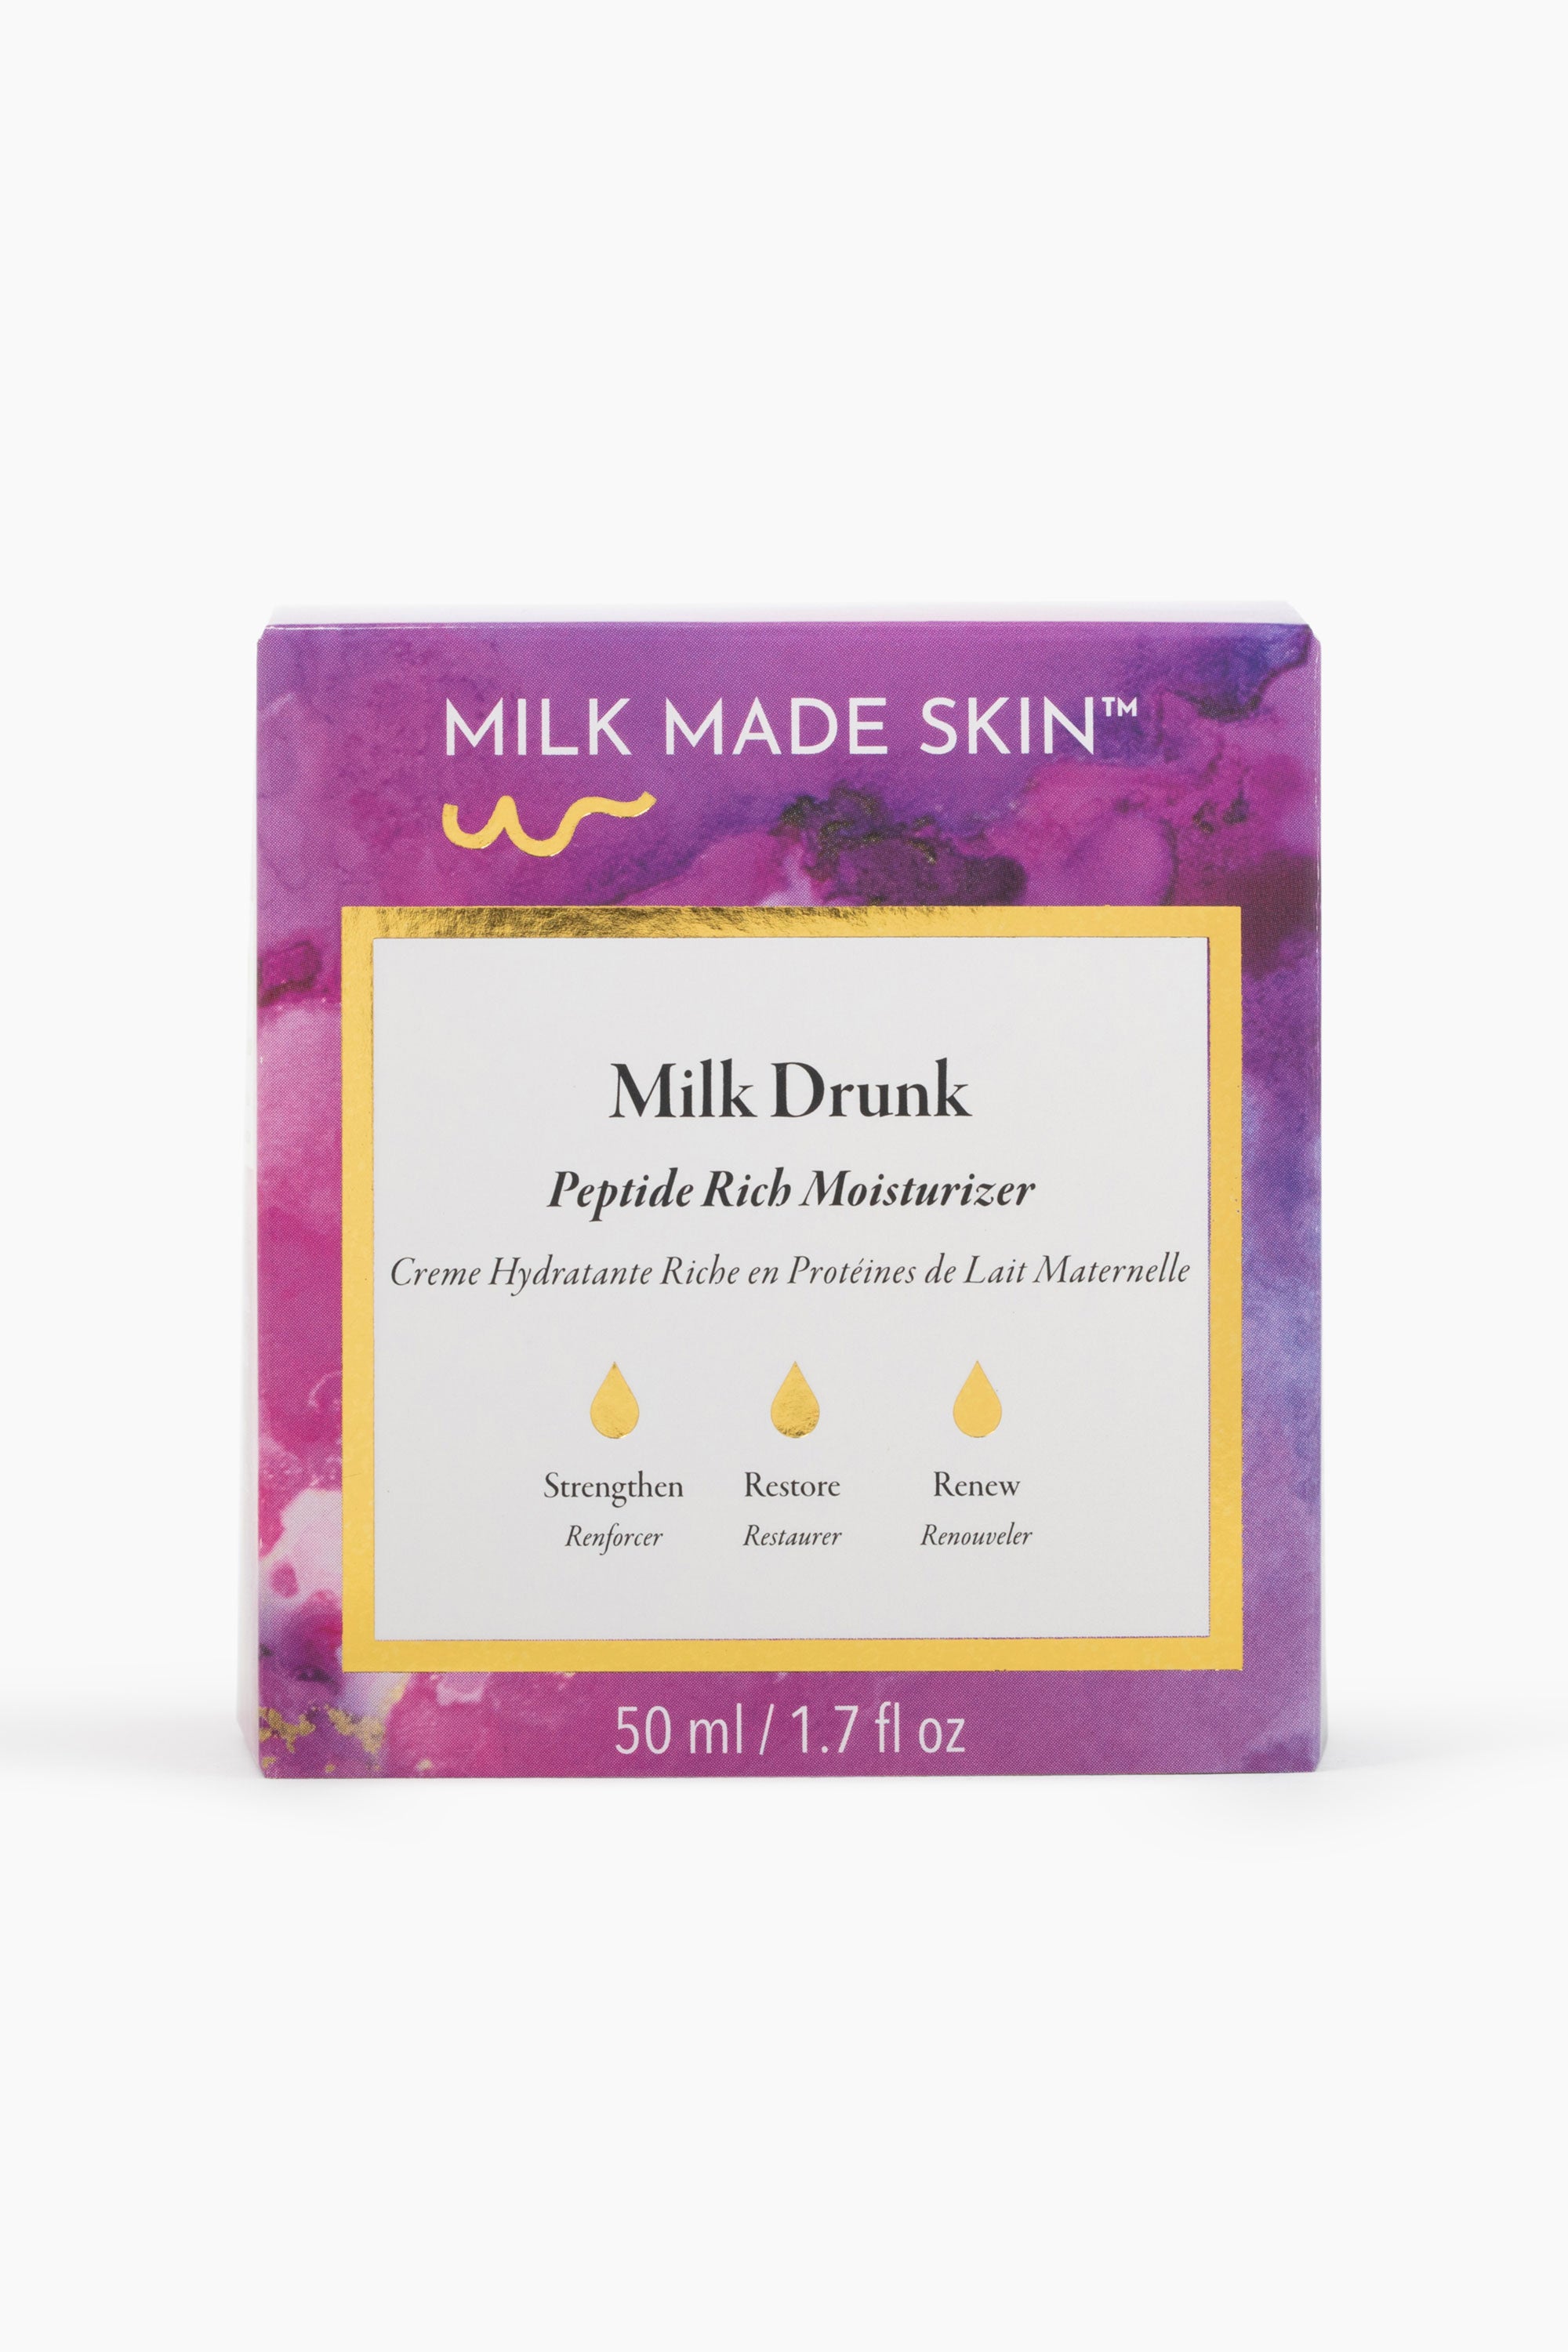 Milk Made Skin Milk drunk box